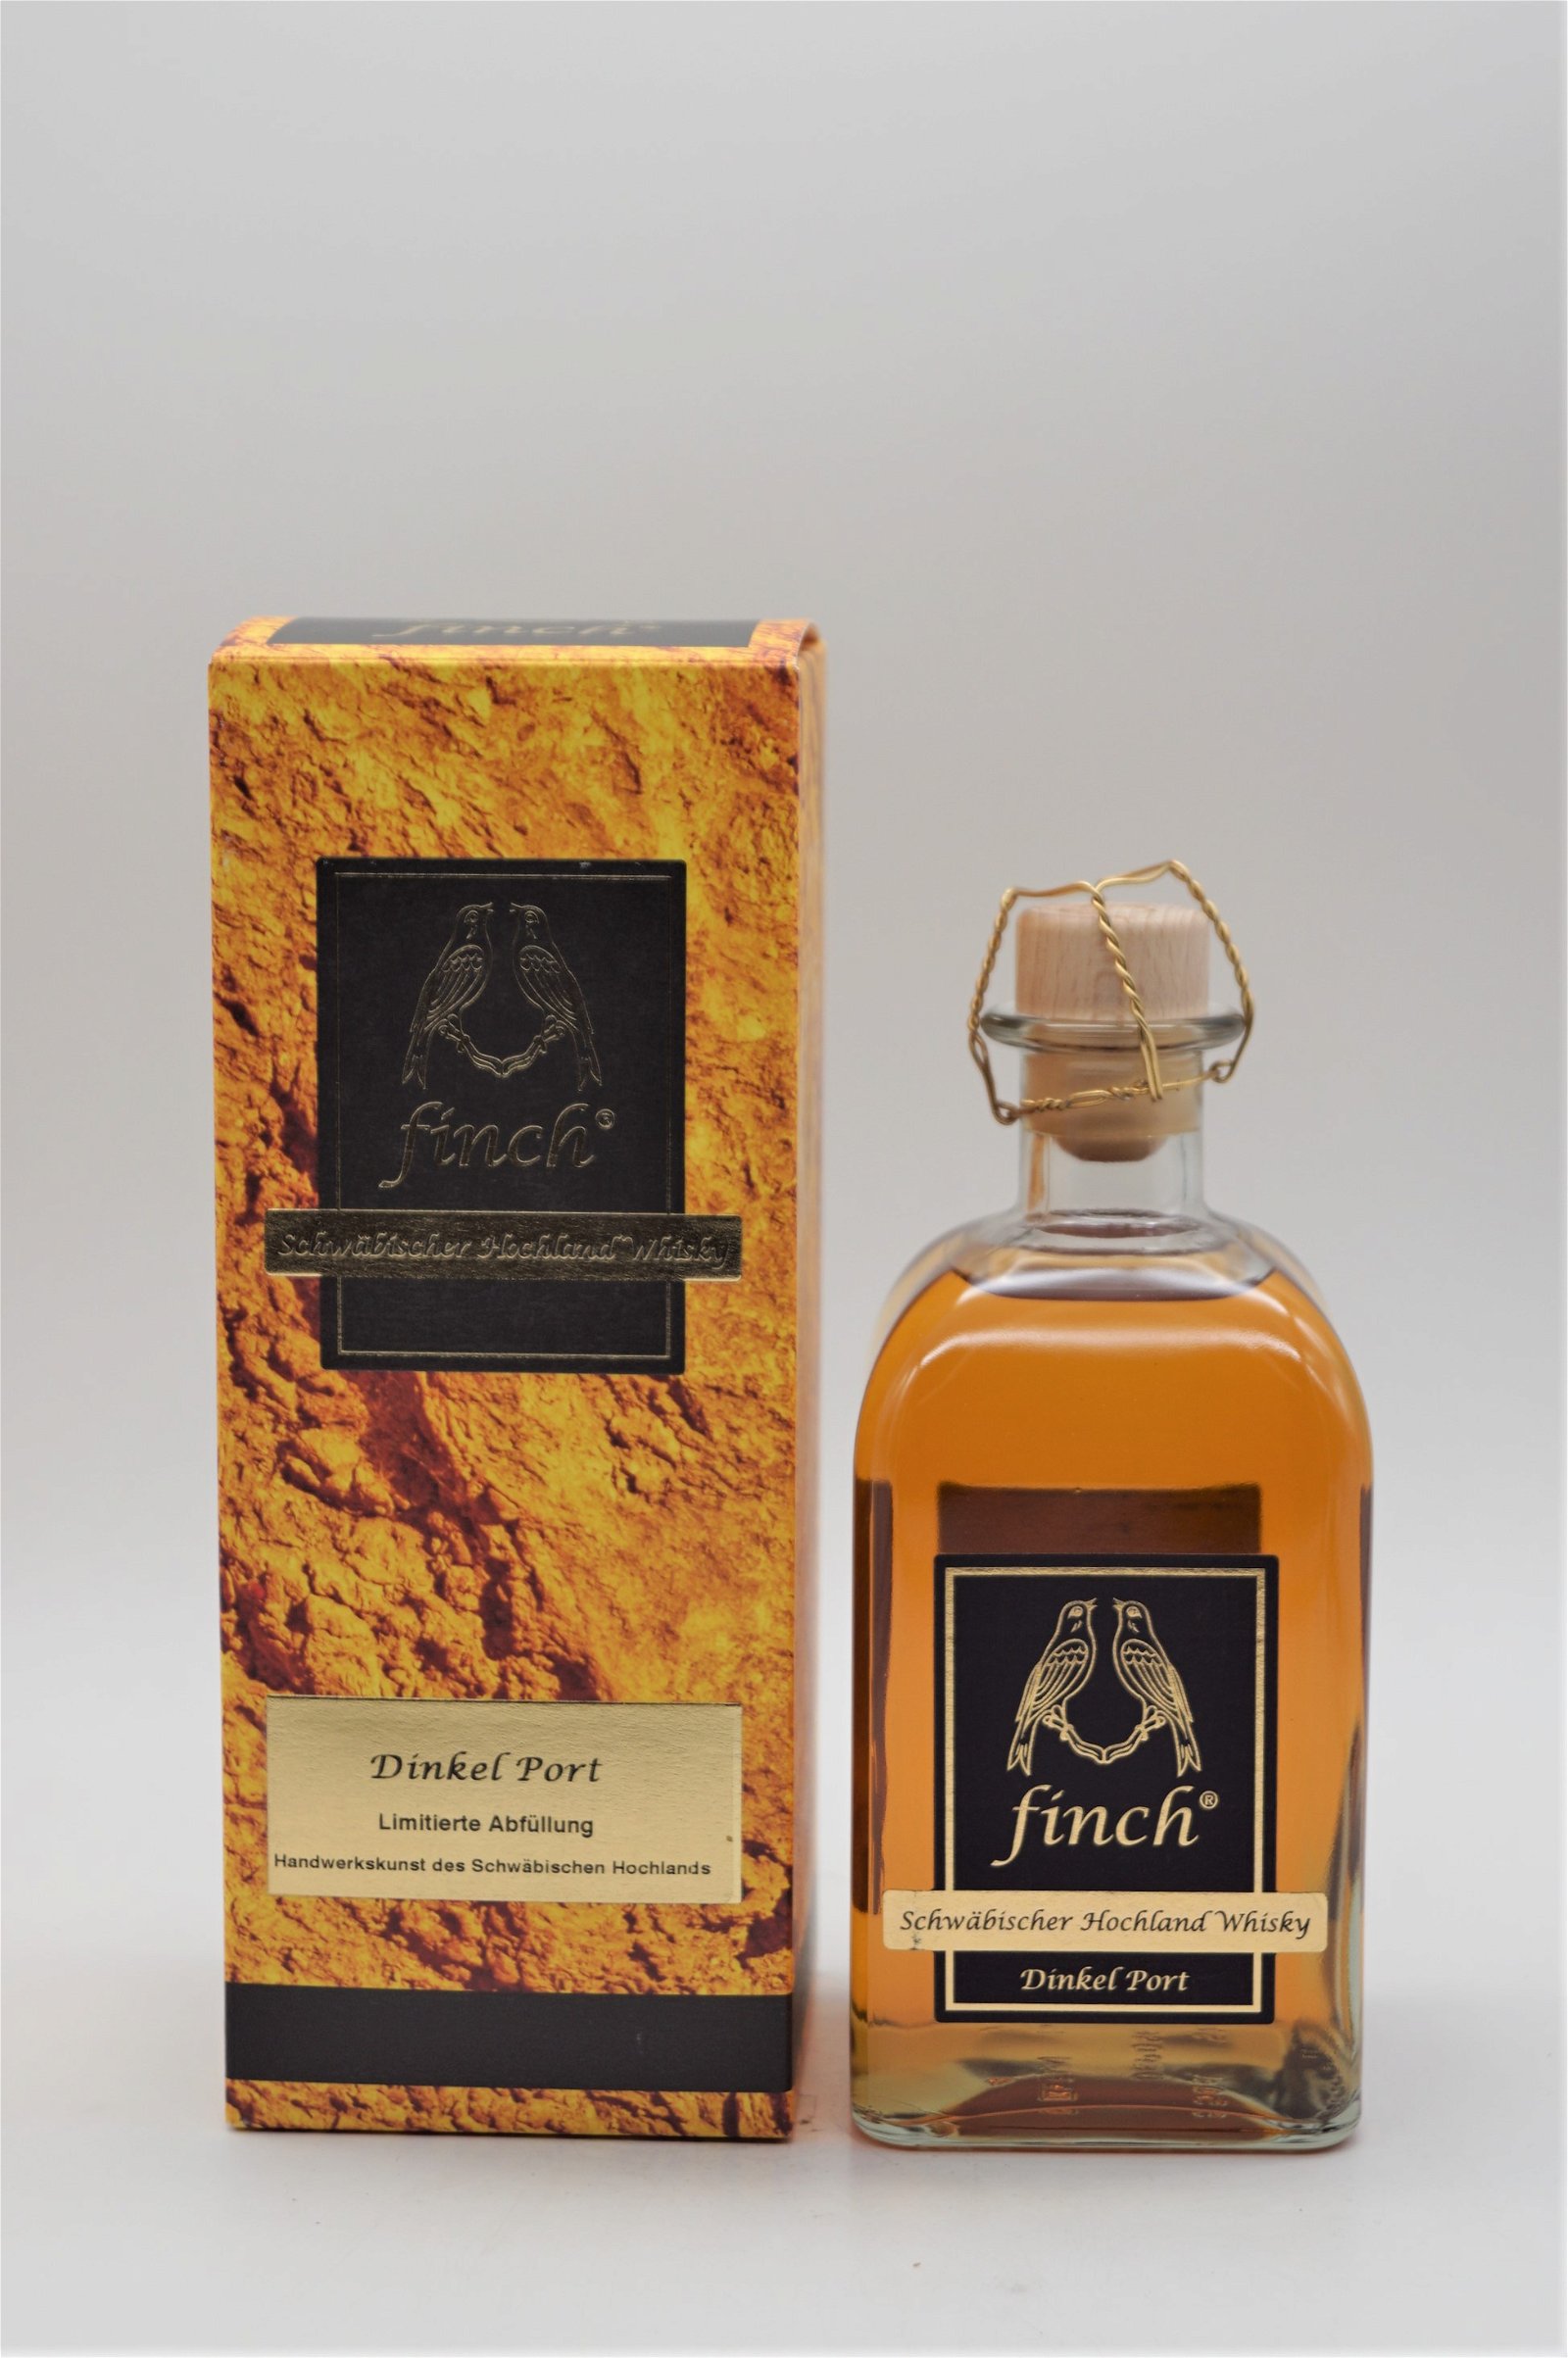 Finch Dinkel Port Schwäbischer Hochland Whisky